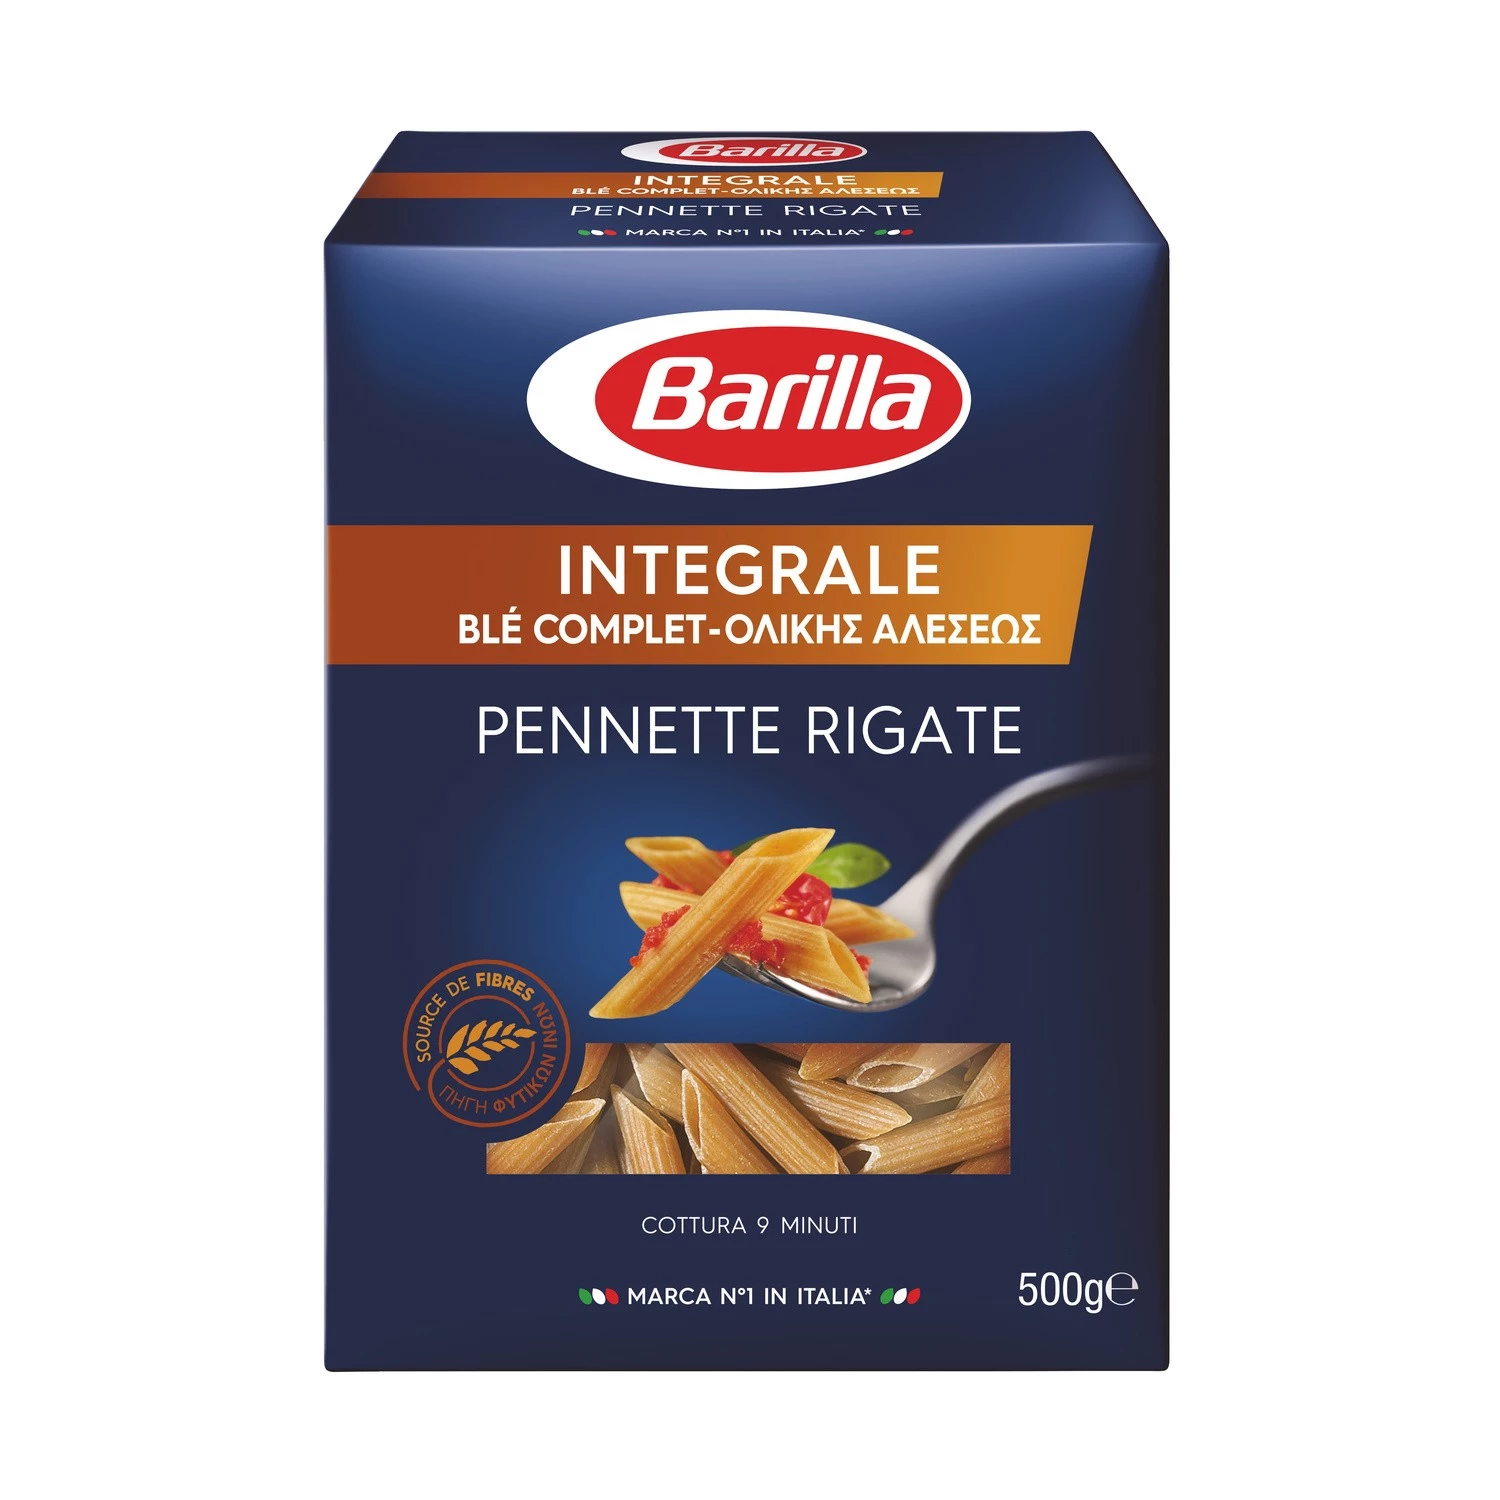 Whole wheat pennette rigate pasta 500g - BARILLA